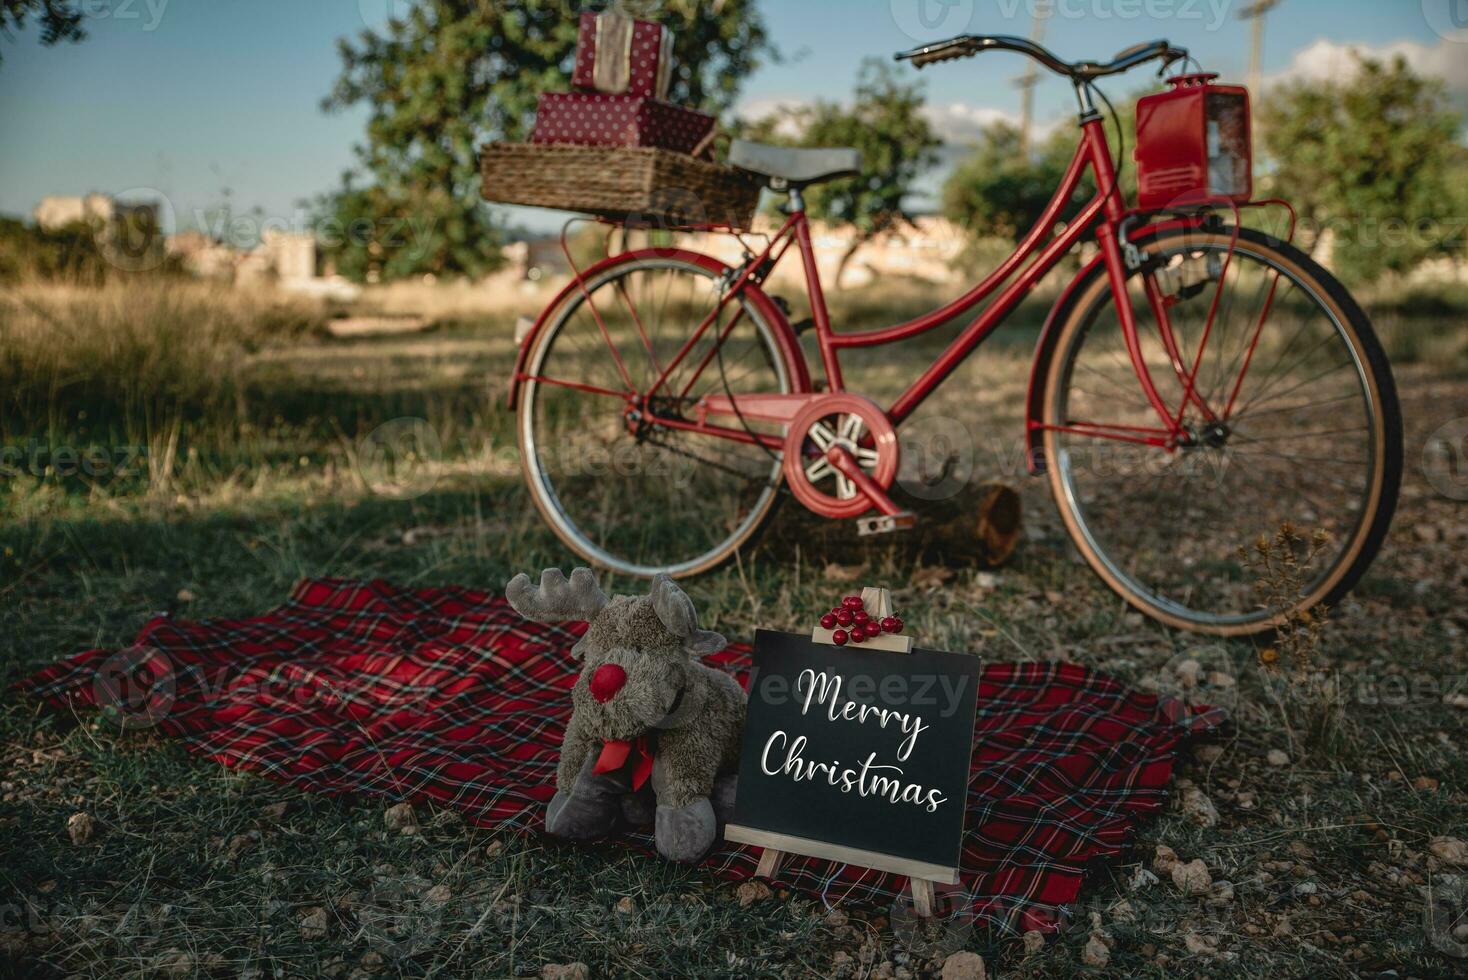 ao ar livre Natal sessão com bicicleta com presentes foto